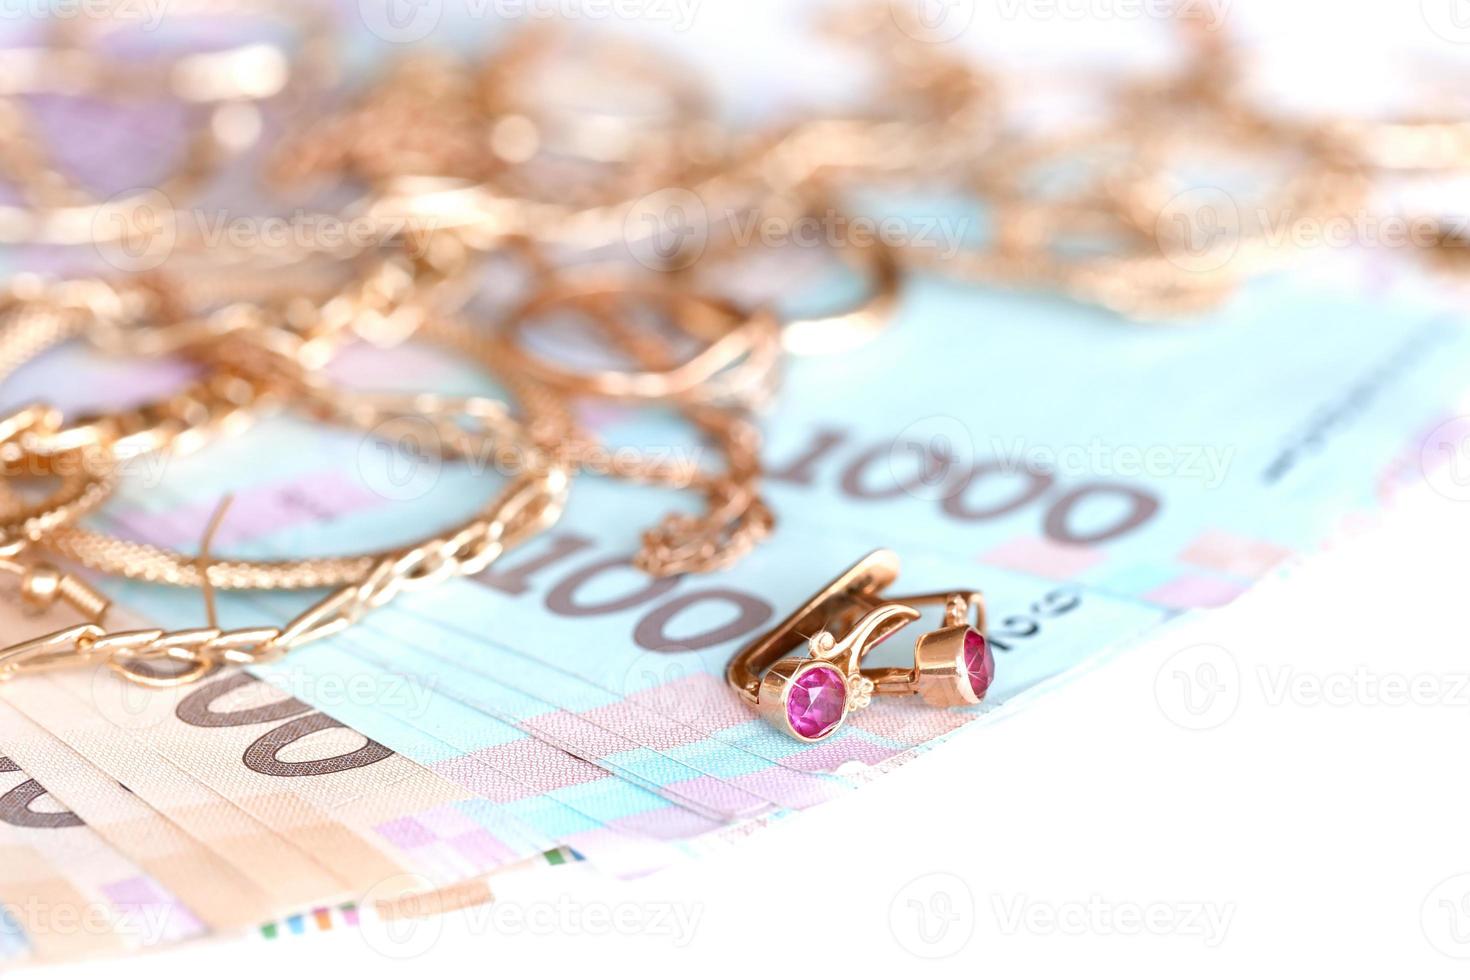 molti costoso d'oro jewerly anelli, orecchini e collane con grande quantità di ucraino i soldi fatture. banco dei pegni o jewerly negozio concetto. gioielleria commercio foto